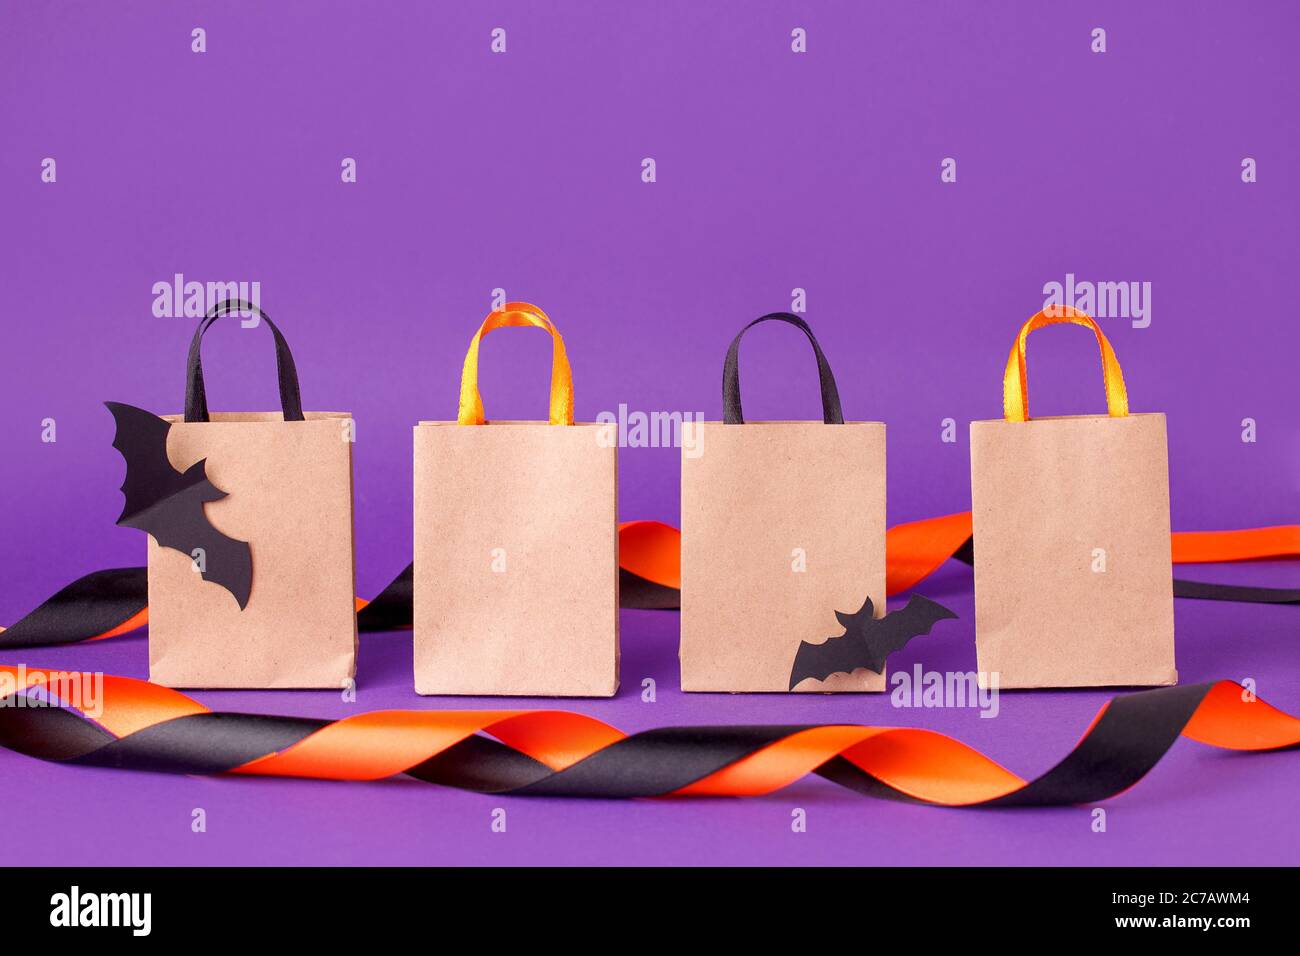 Maquette pour Halloween solde massage sur papier pour faire du shopping sur fond violet, octobre automne saison solde rabais concept, tr Banque D'Images